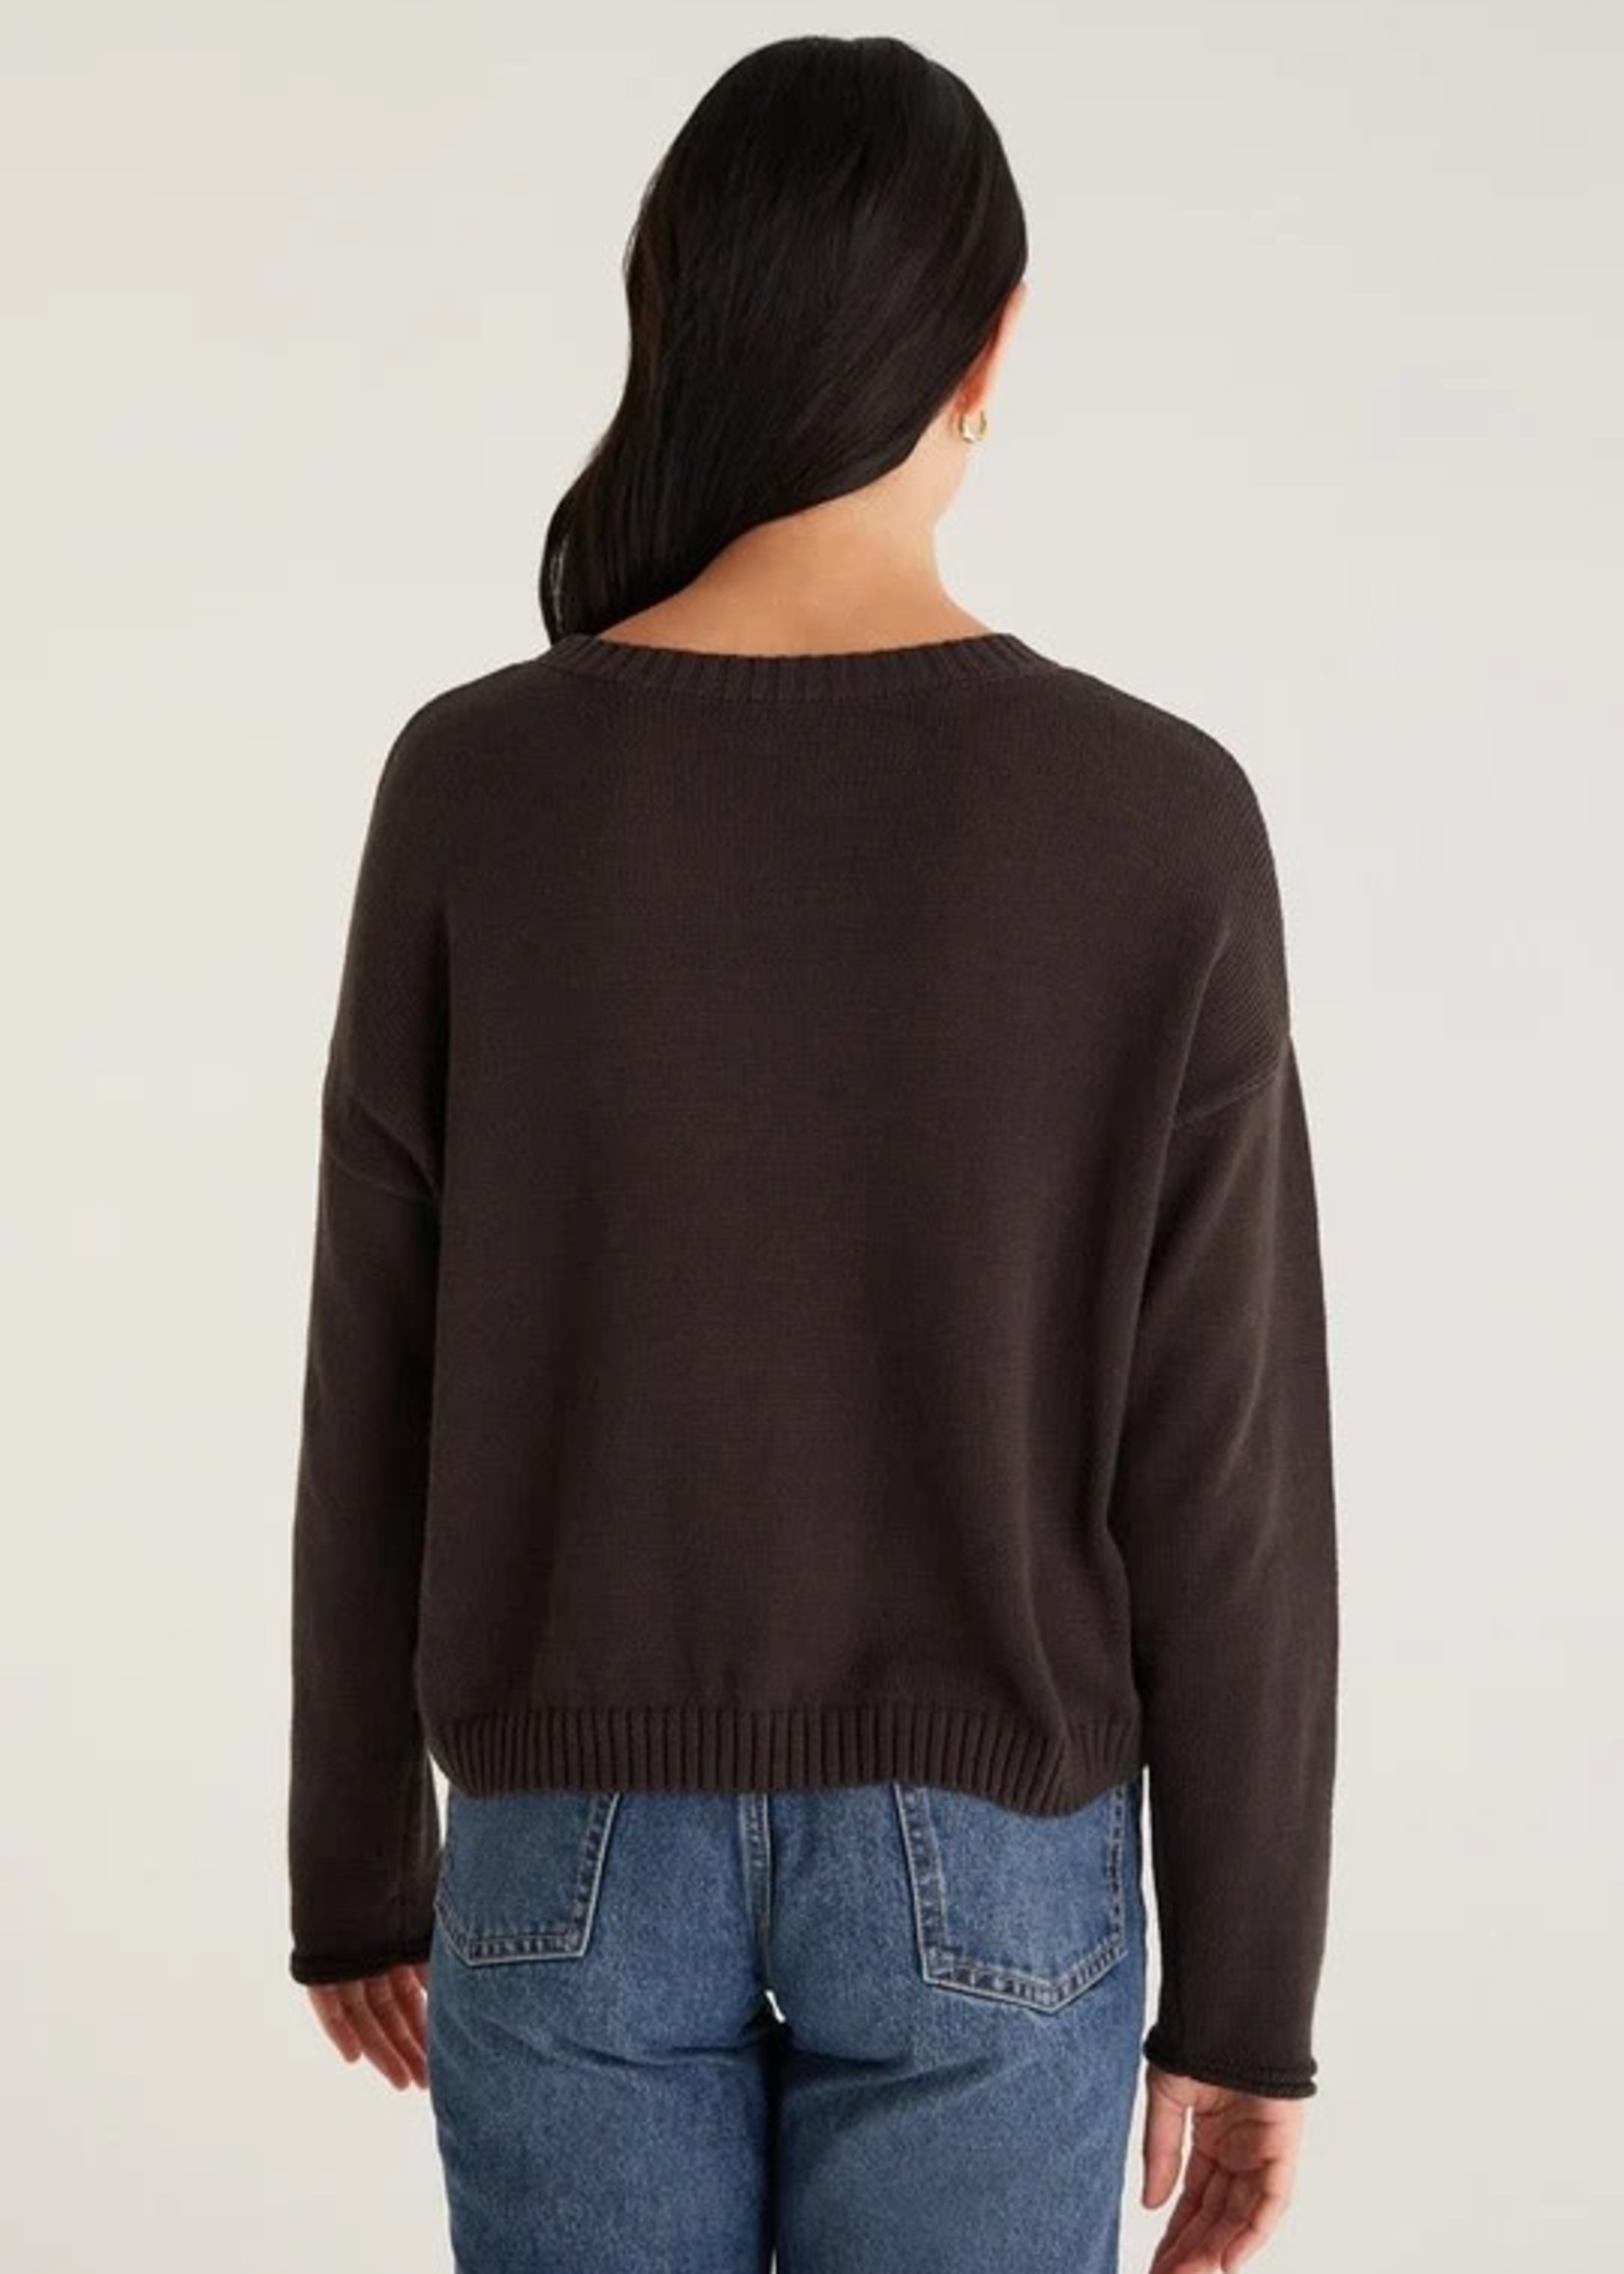 Z supply Sienna Marled Sweater